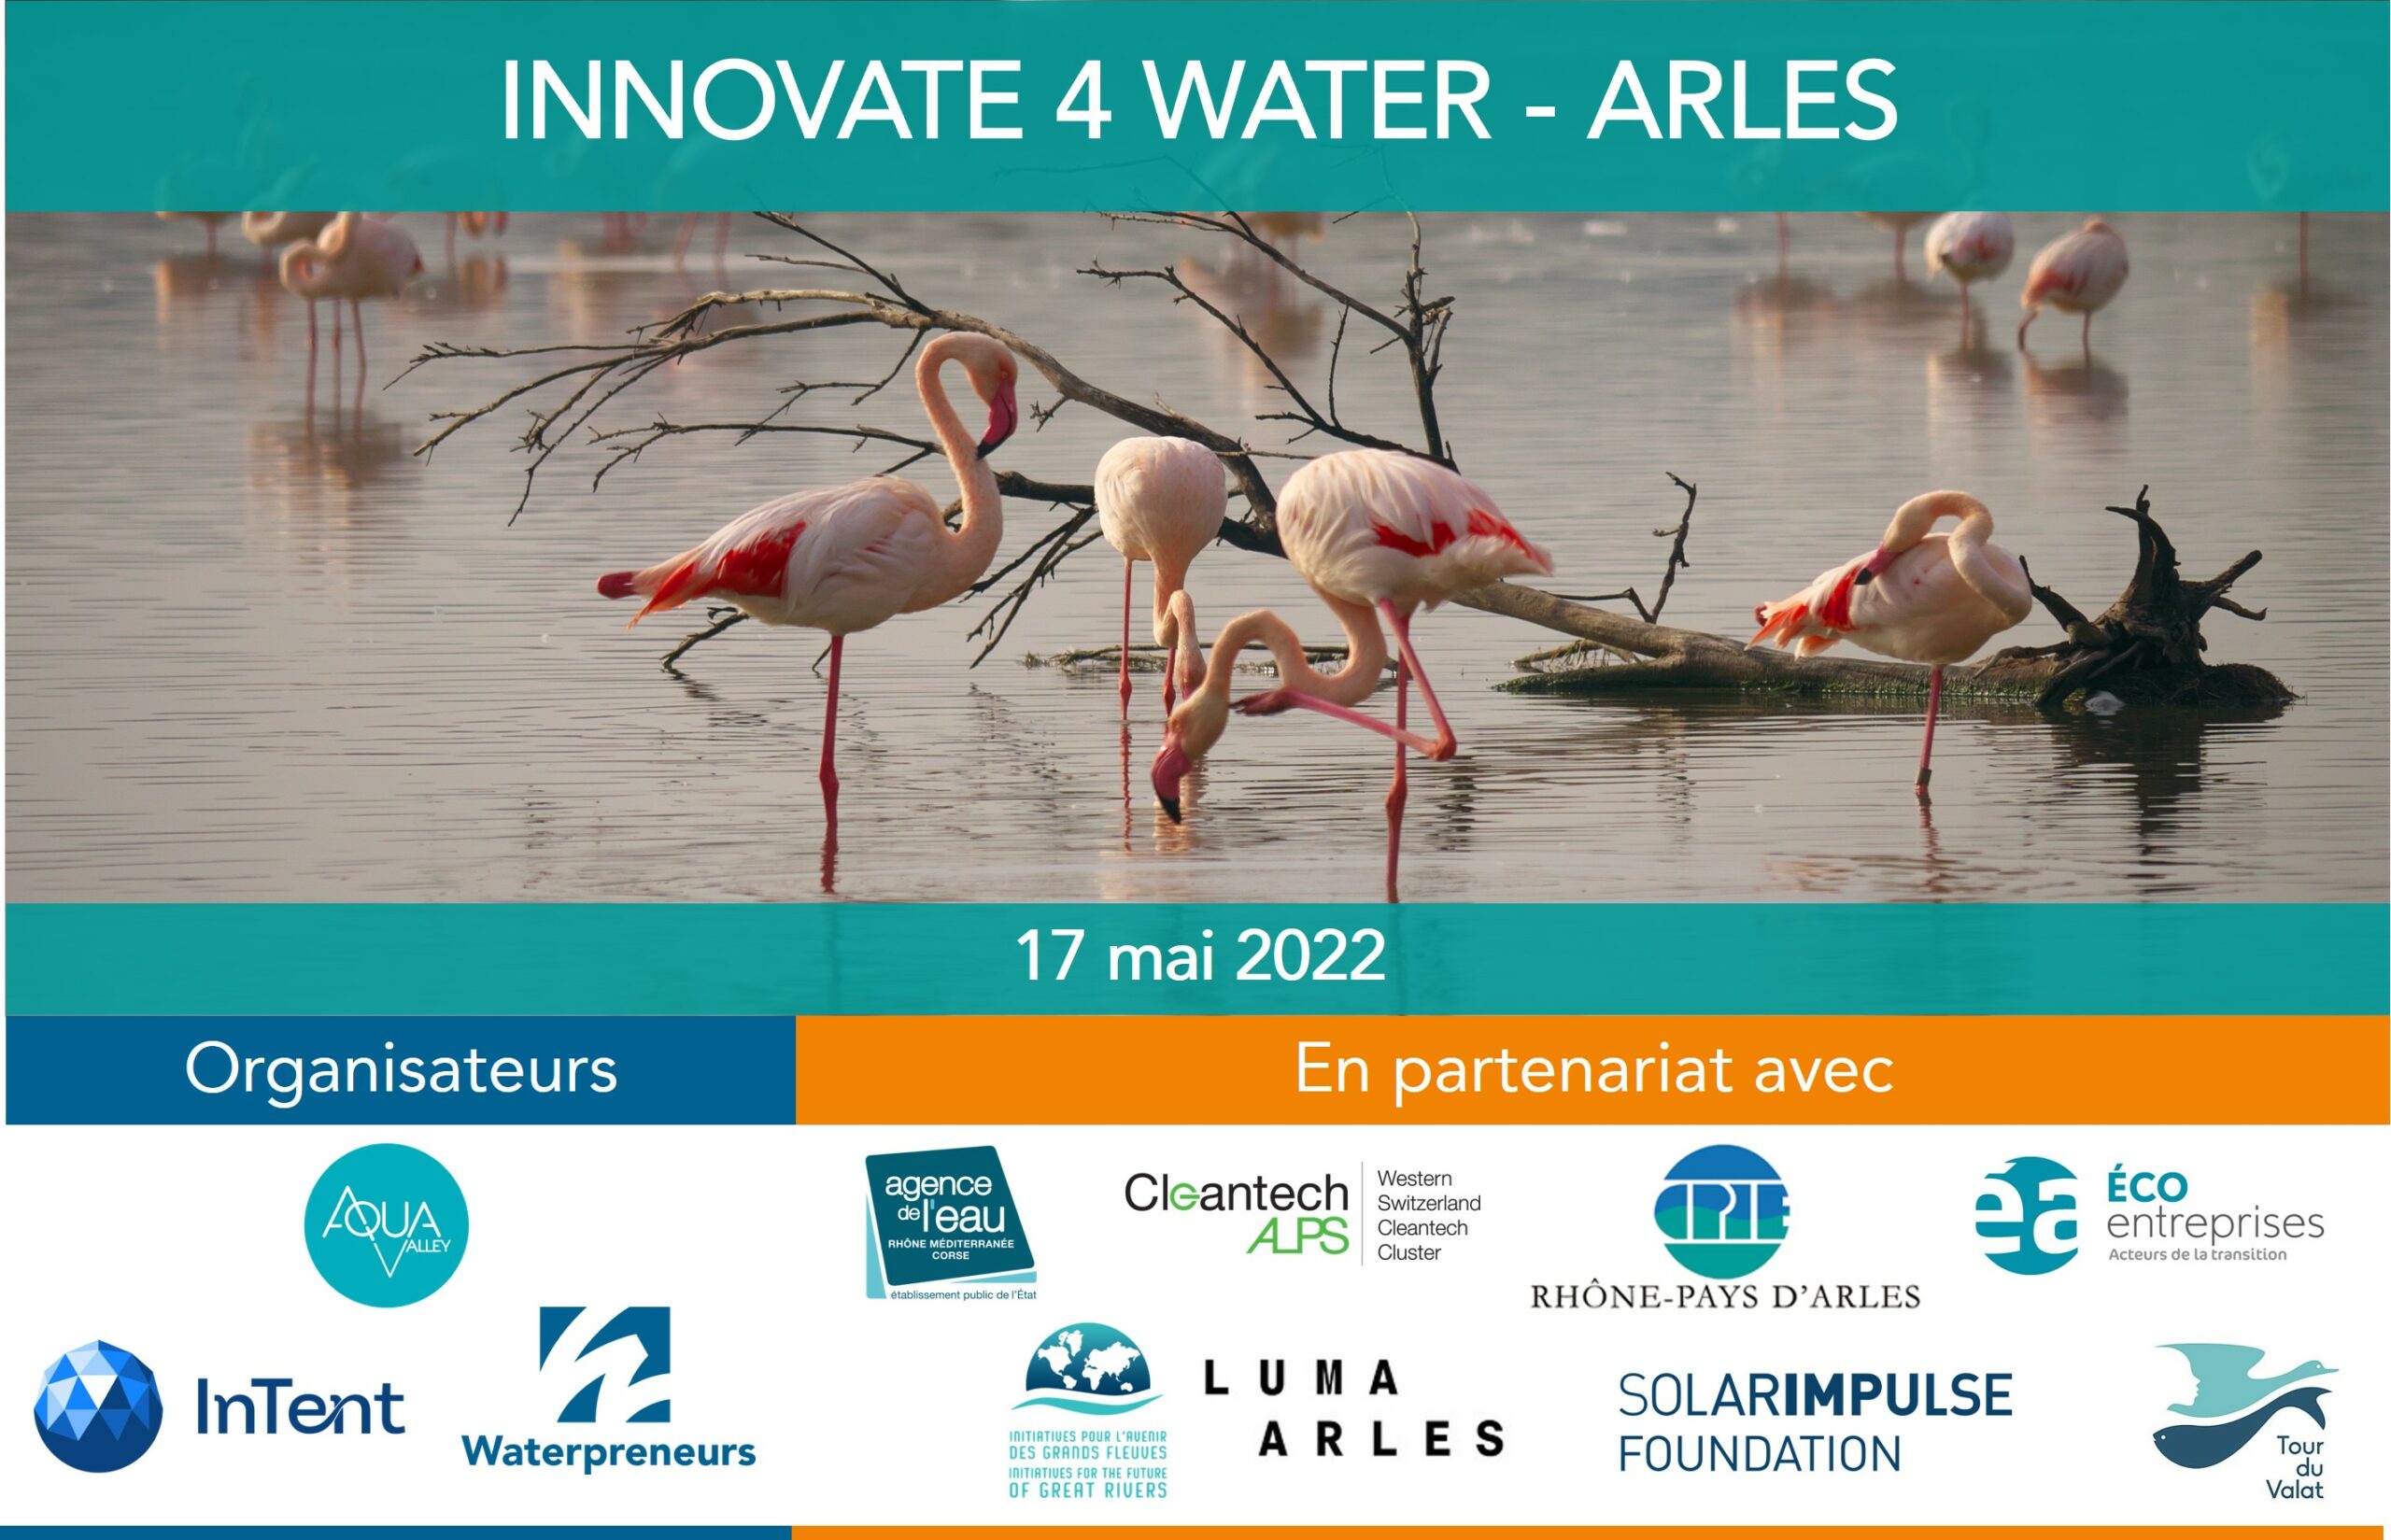 « Innovate 4 Water » Arles